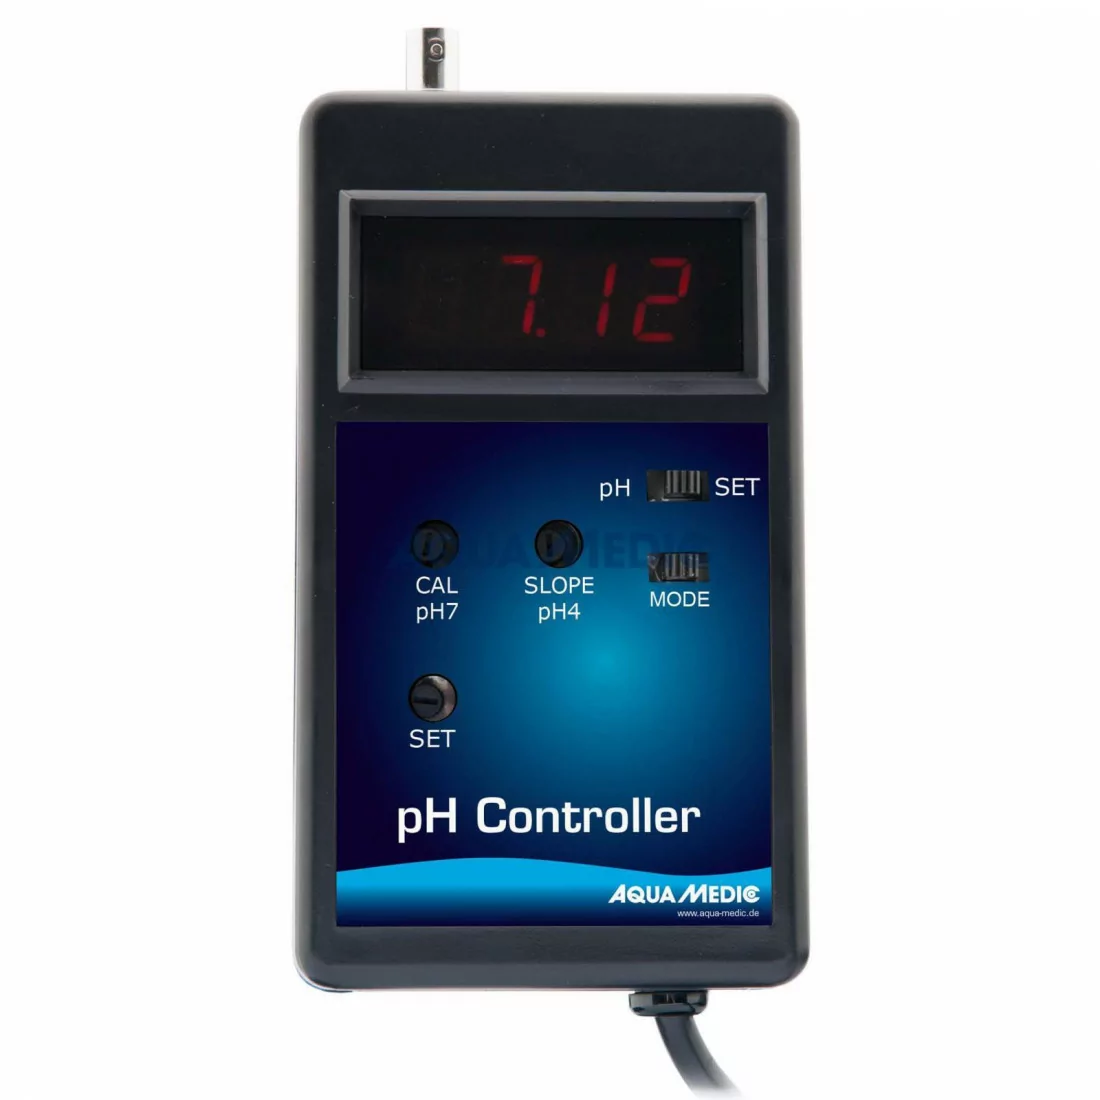 pH controller